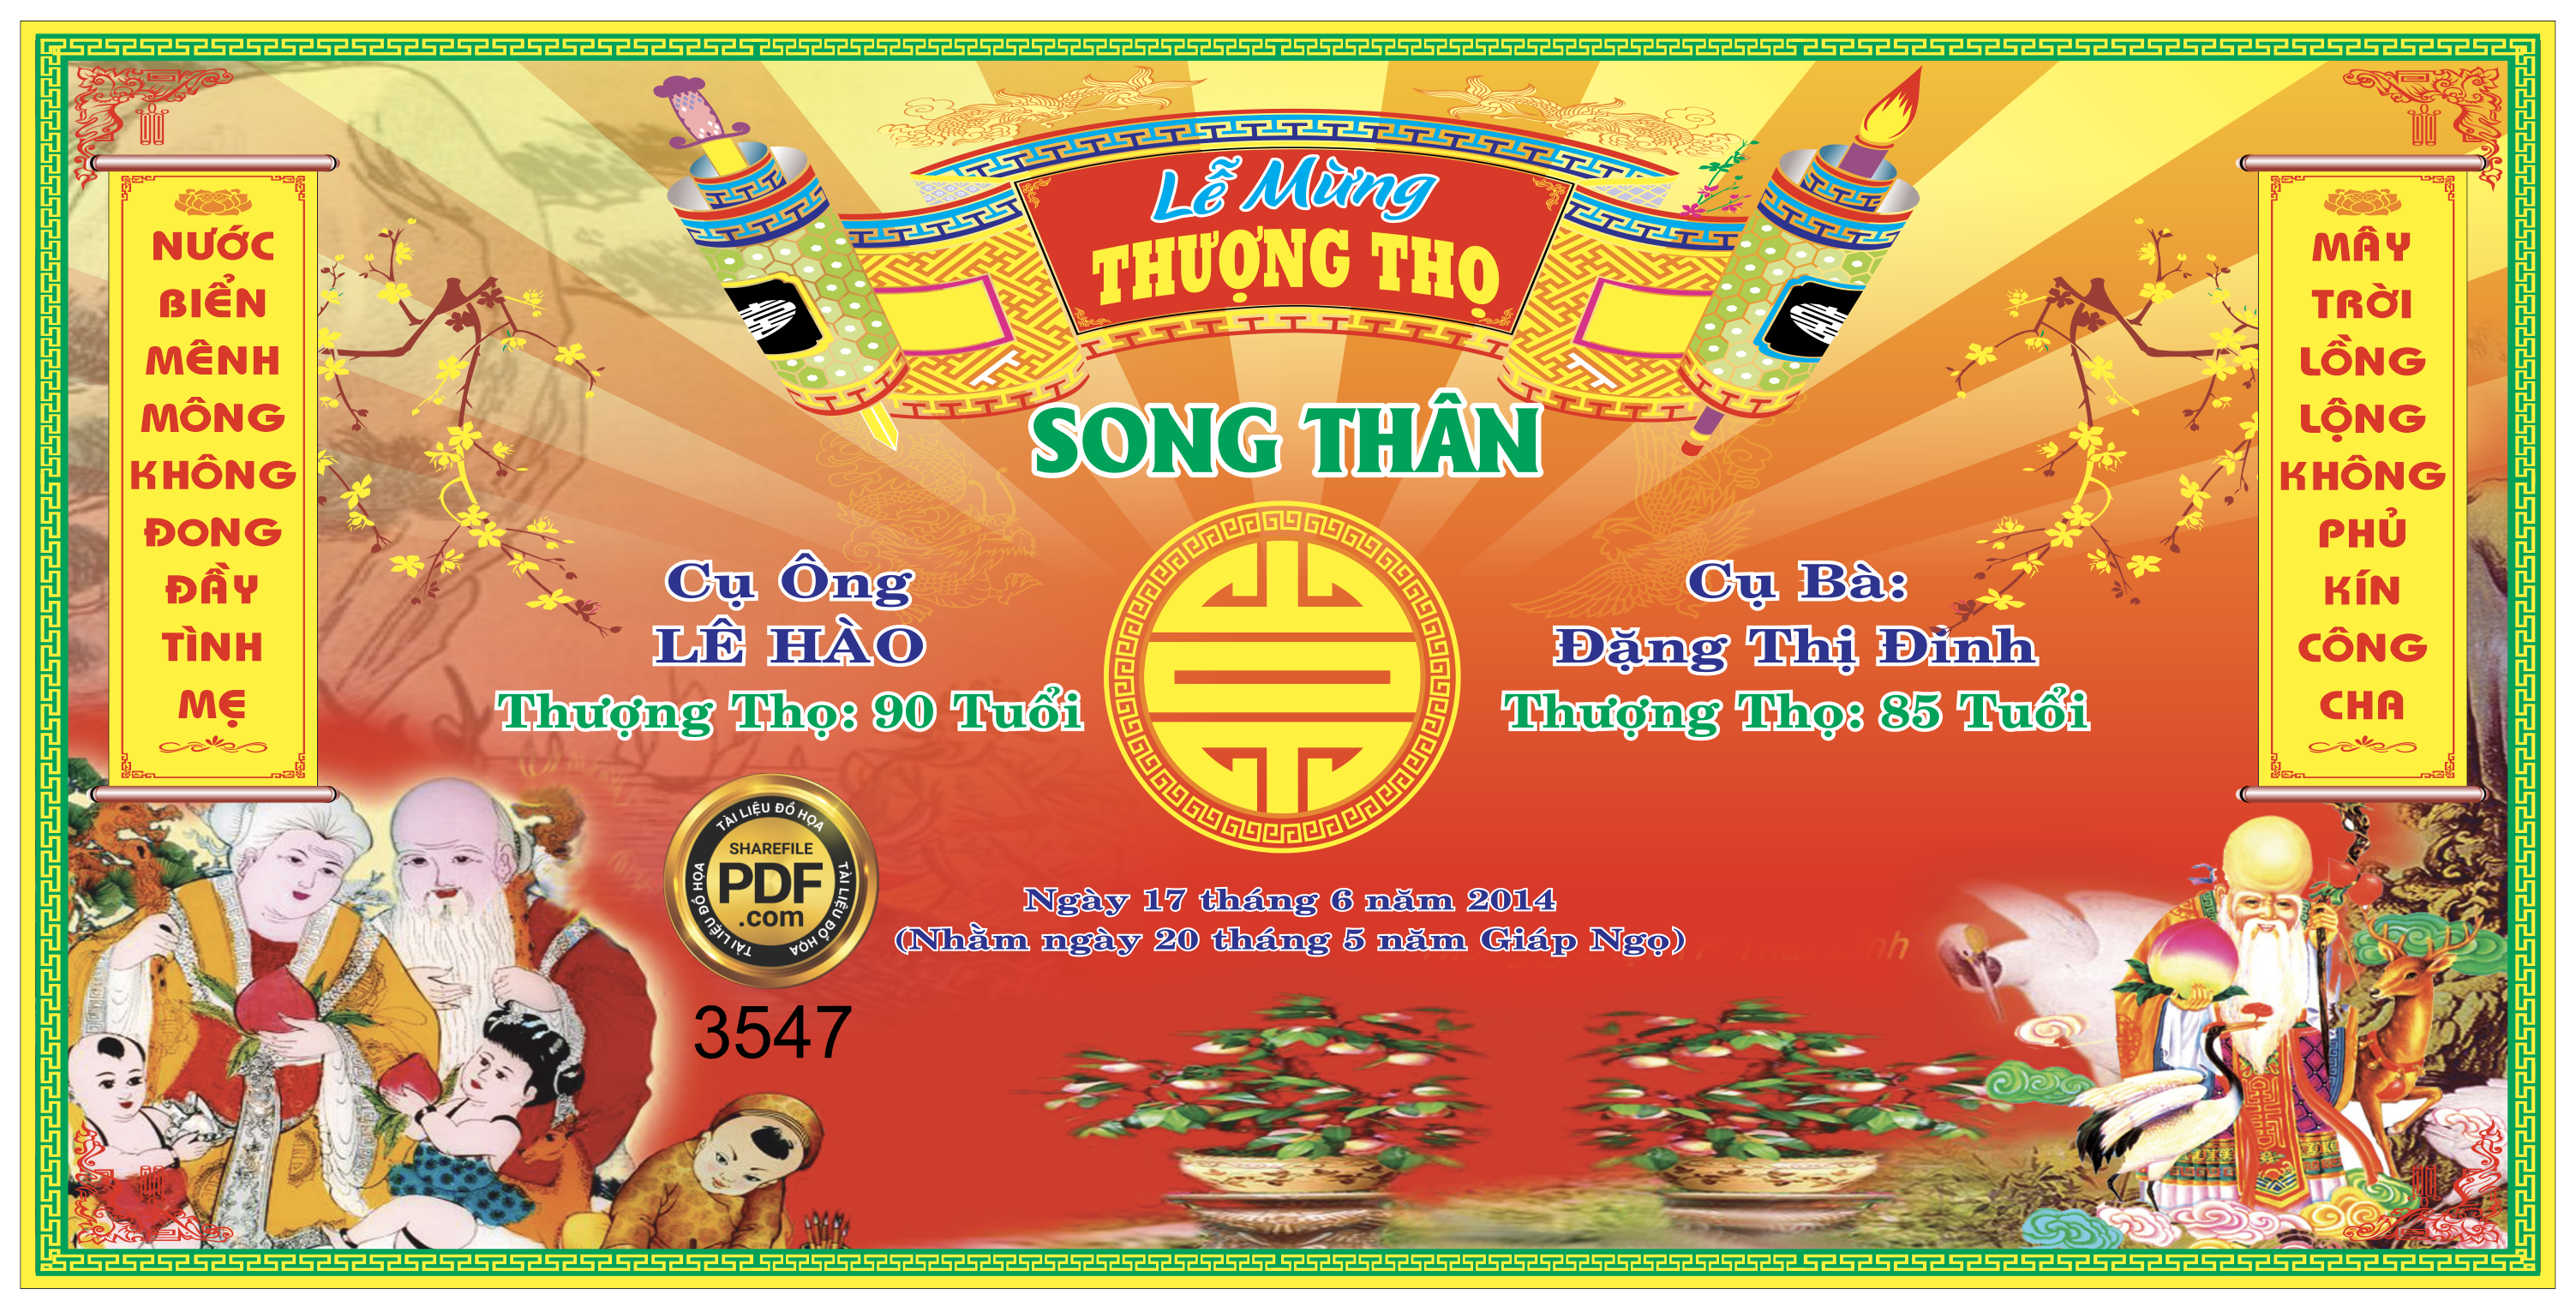 le mung thuong tho song than le hao va dang thi dinh.png